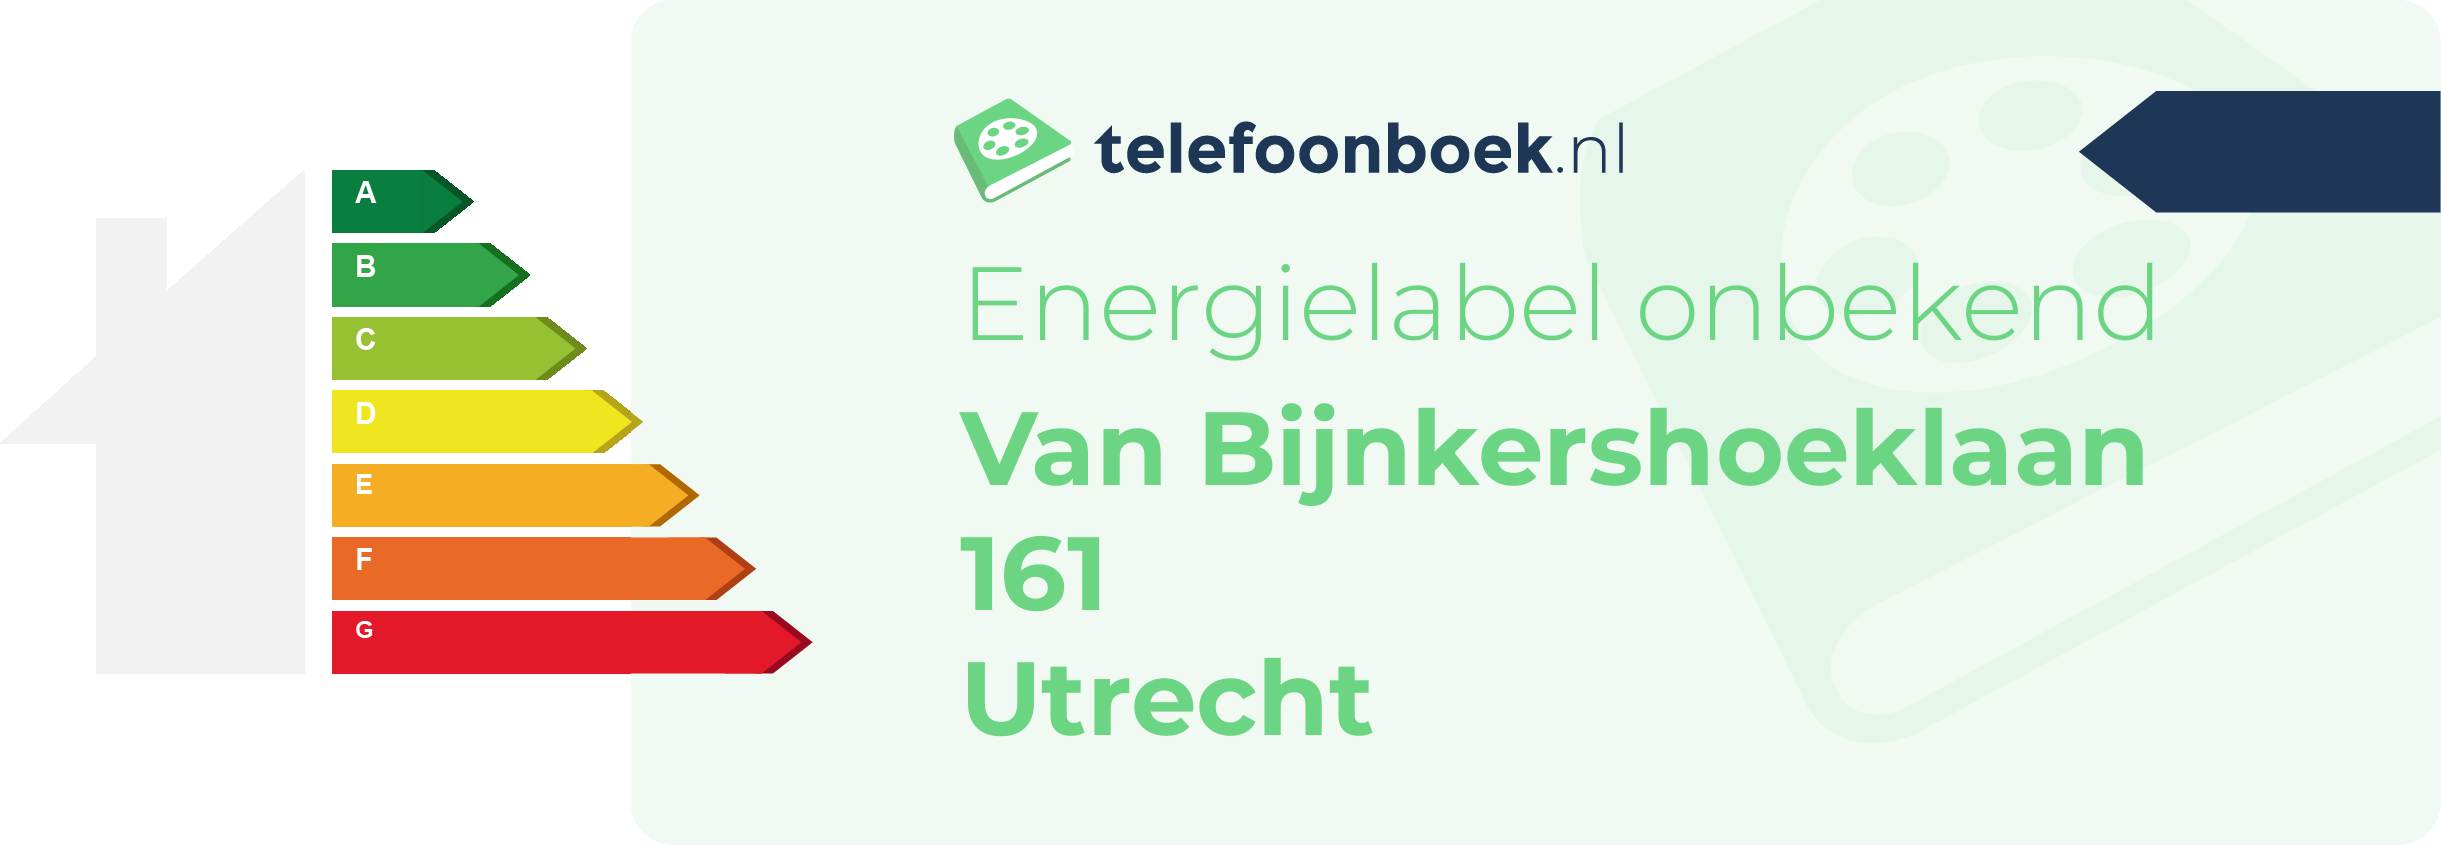 Energielabel Van Bijnkershoeklaan 161 Utrecht